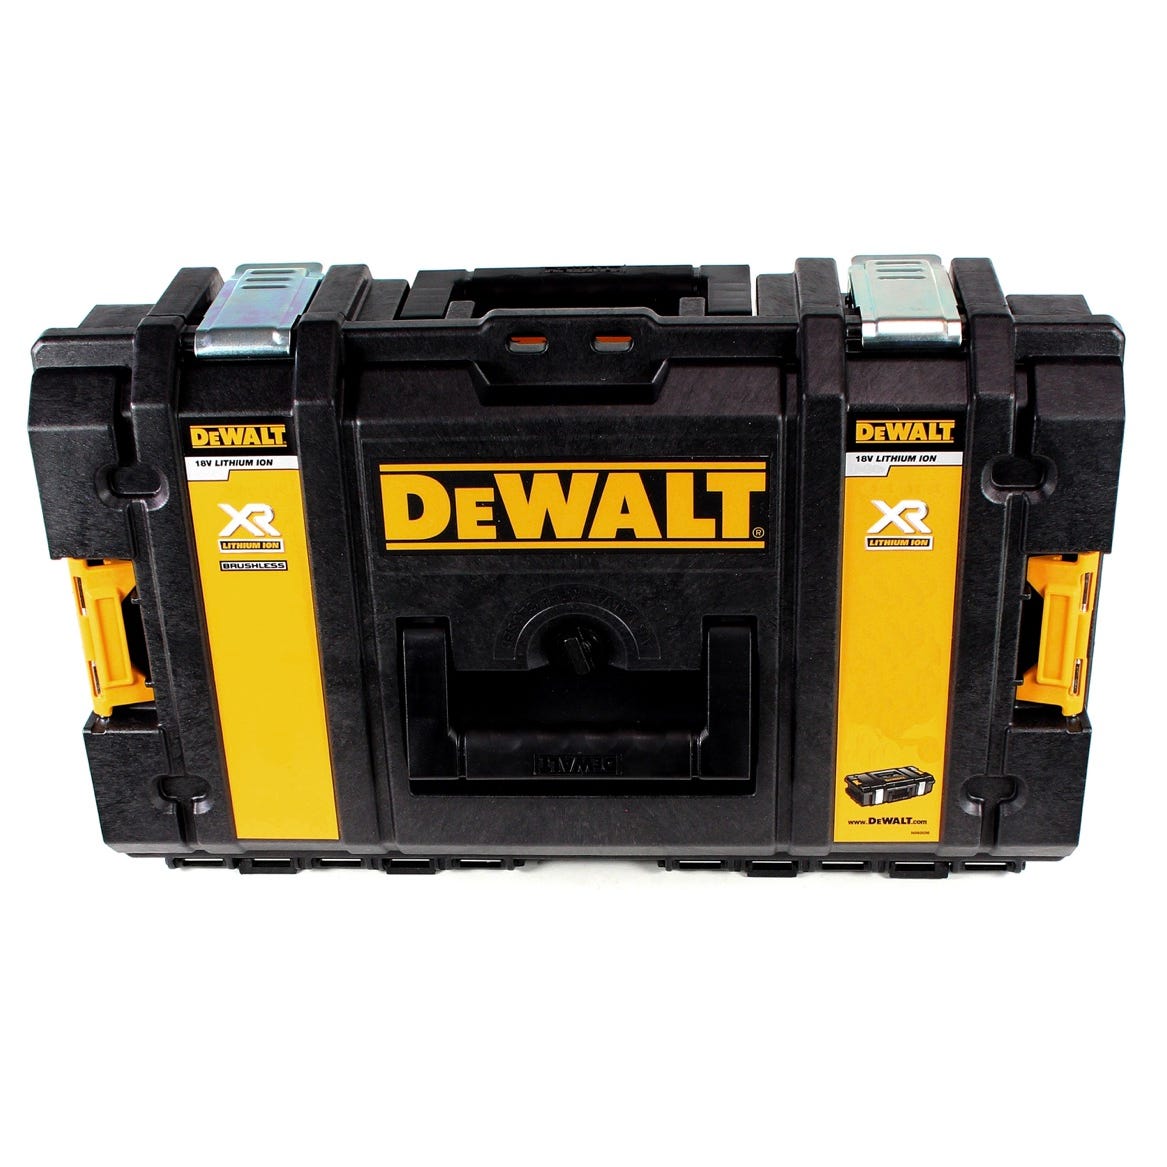 DeWalt DCD 996 Perceuse-visseuse à percussion sans fil 18V 95Nm Brushless + 1x Batterie 5,0Ah + Coffret de transport Toughbox - 2